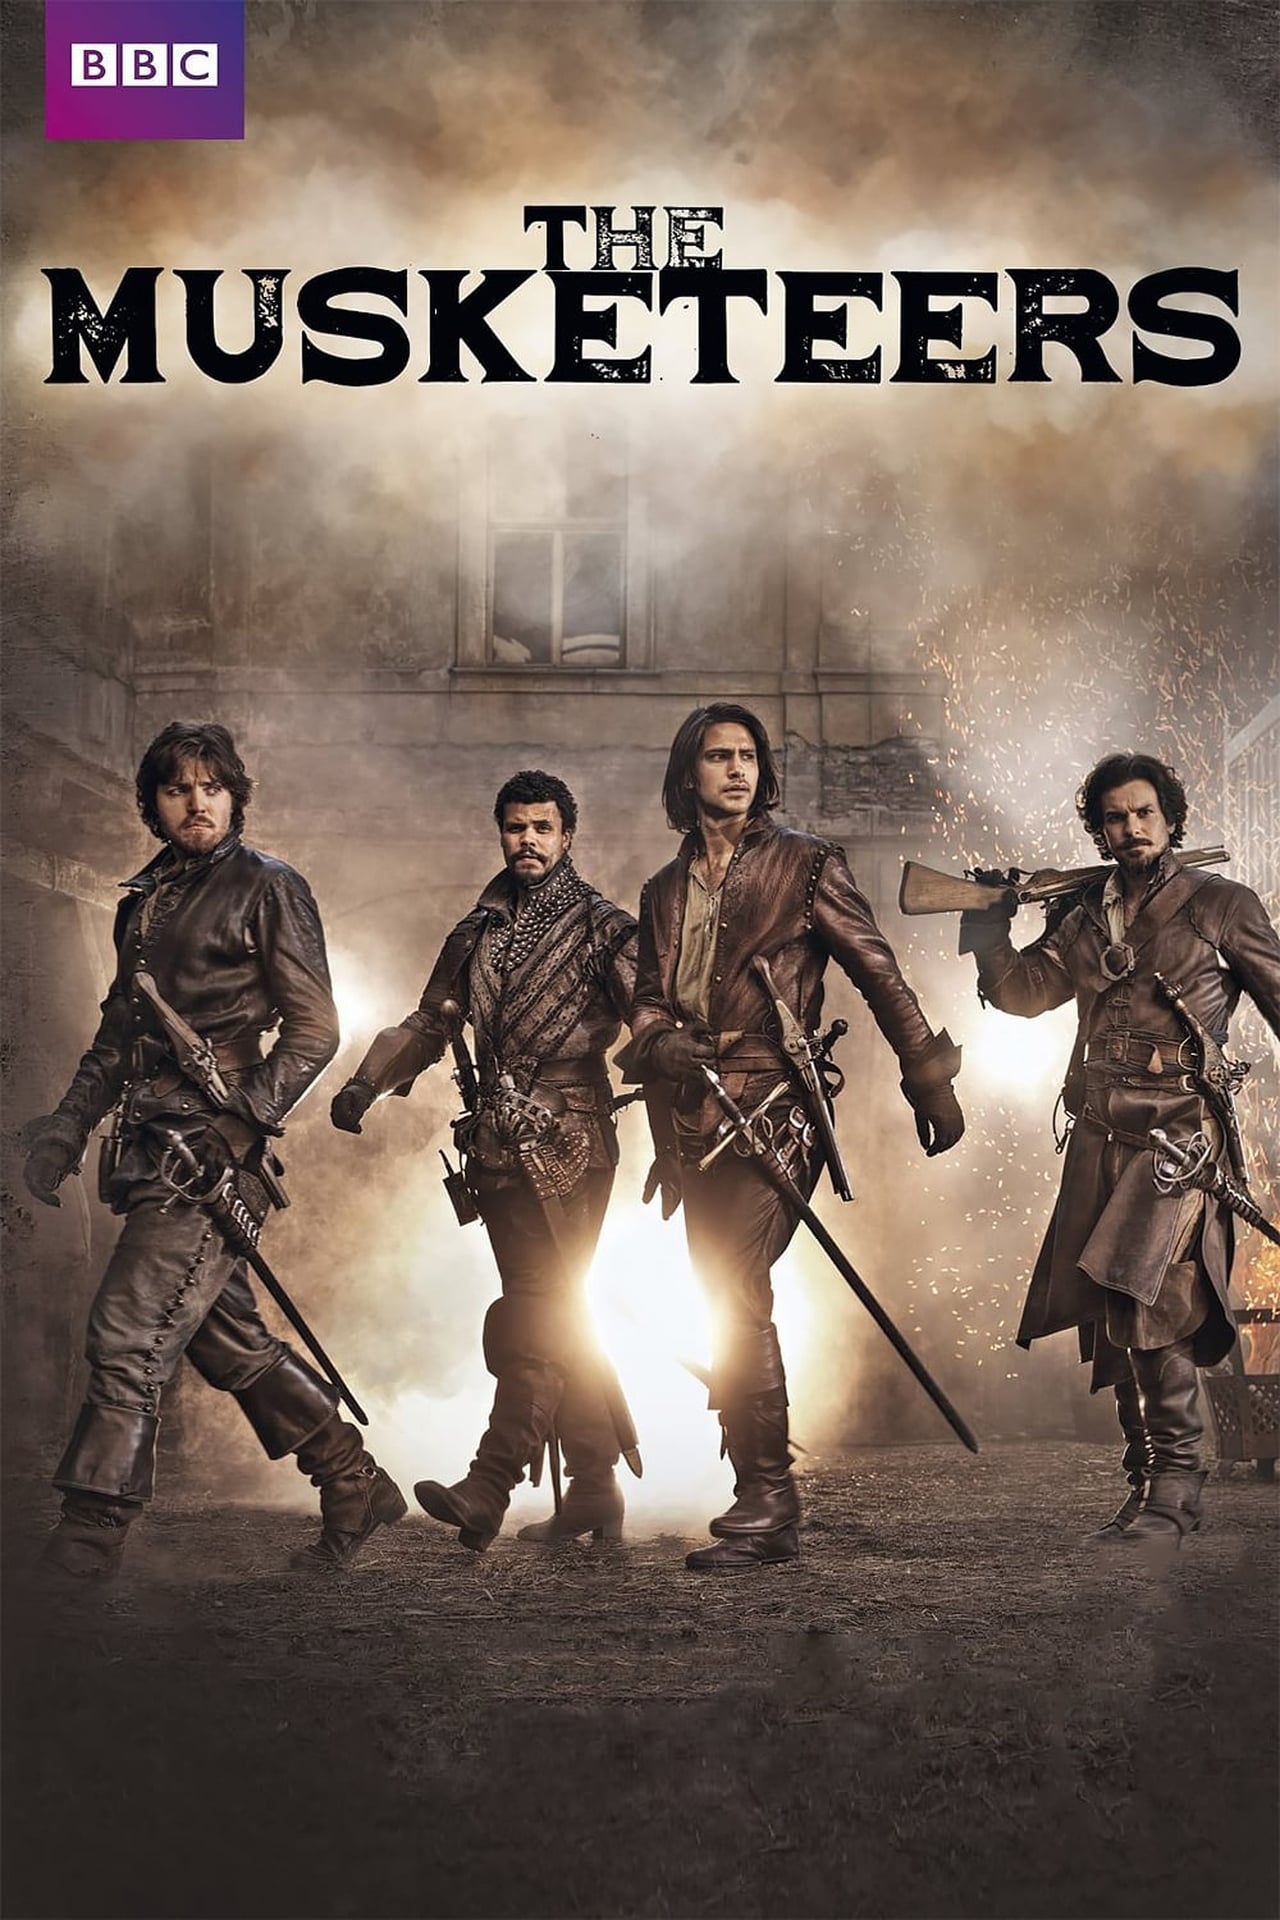 The Musketeers (season 1)